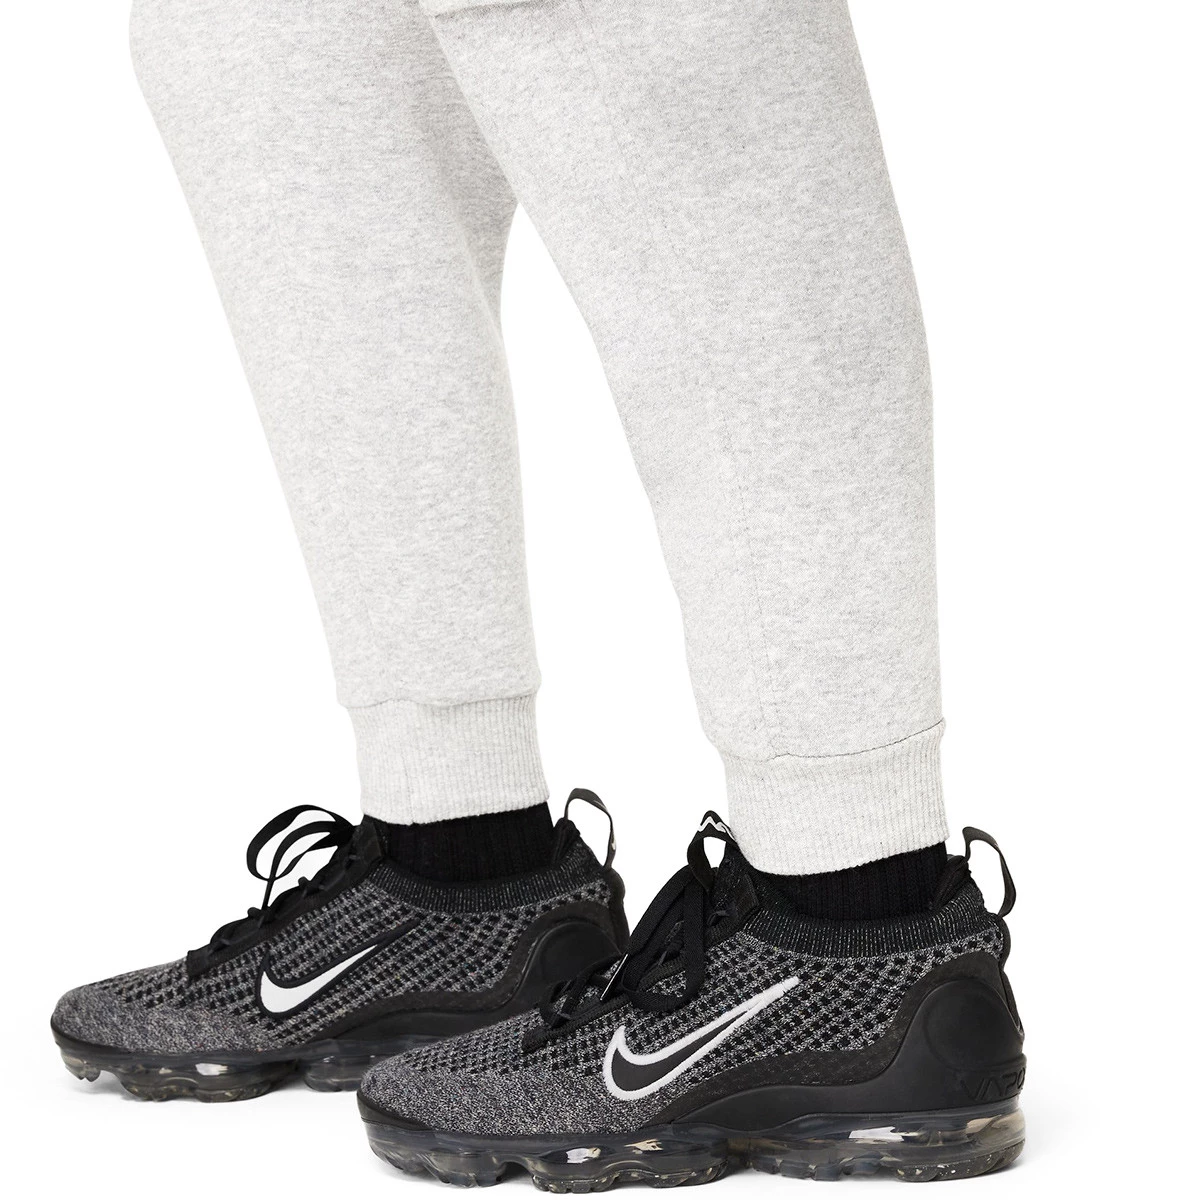 Nike Sportswear Club Fleece Pantalón de cargo - Niño/a